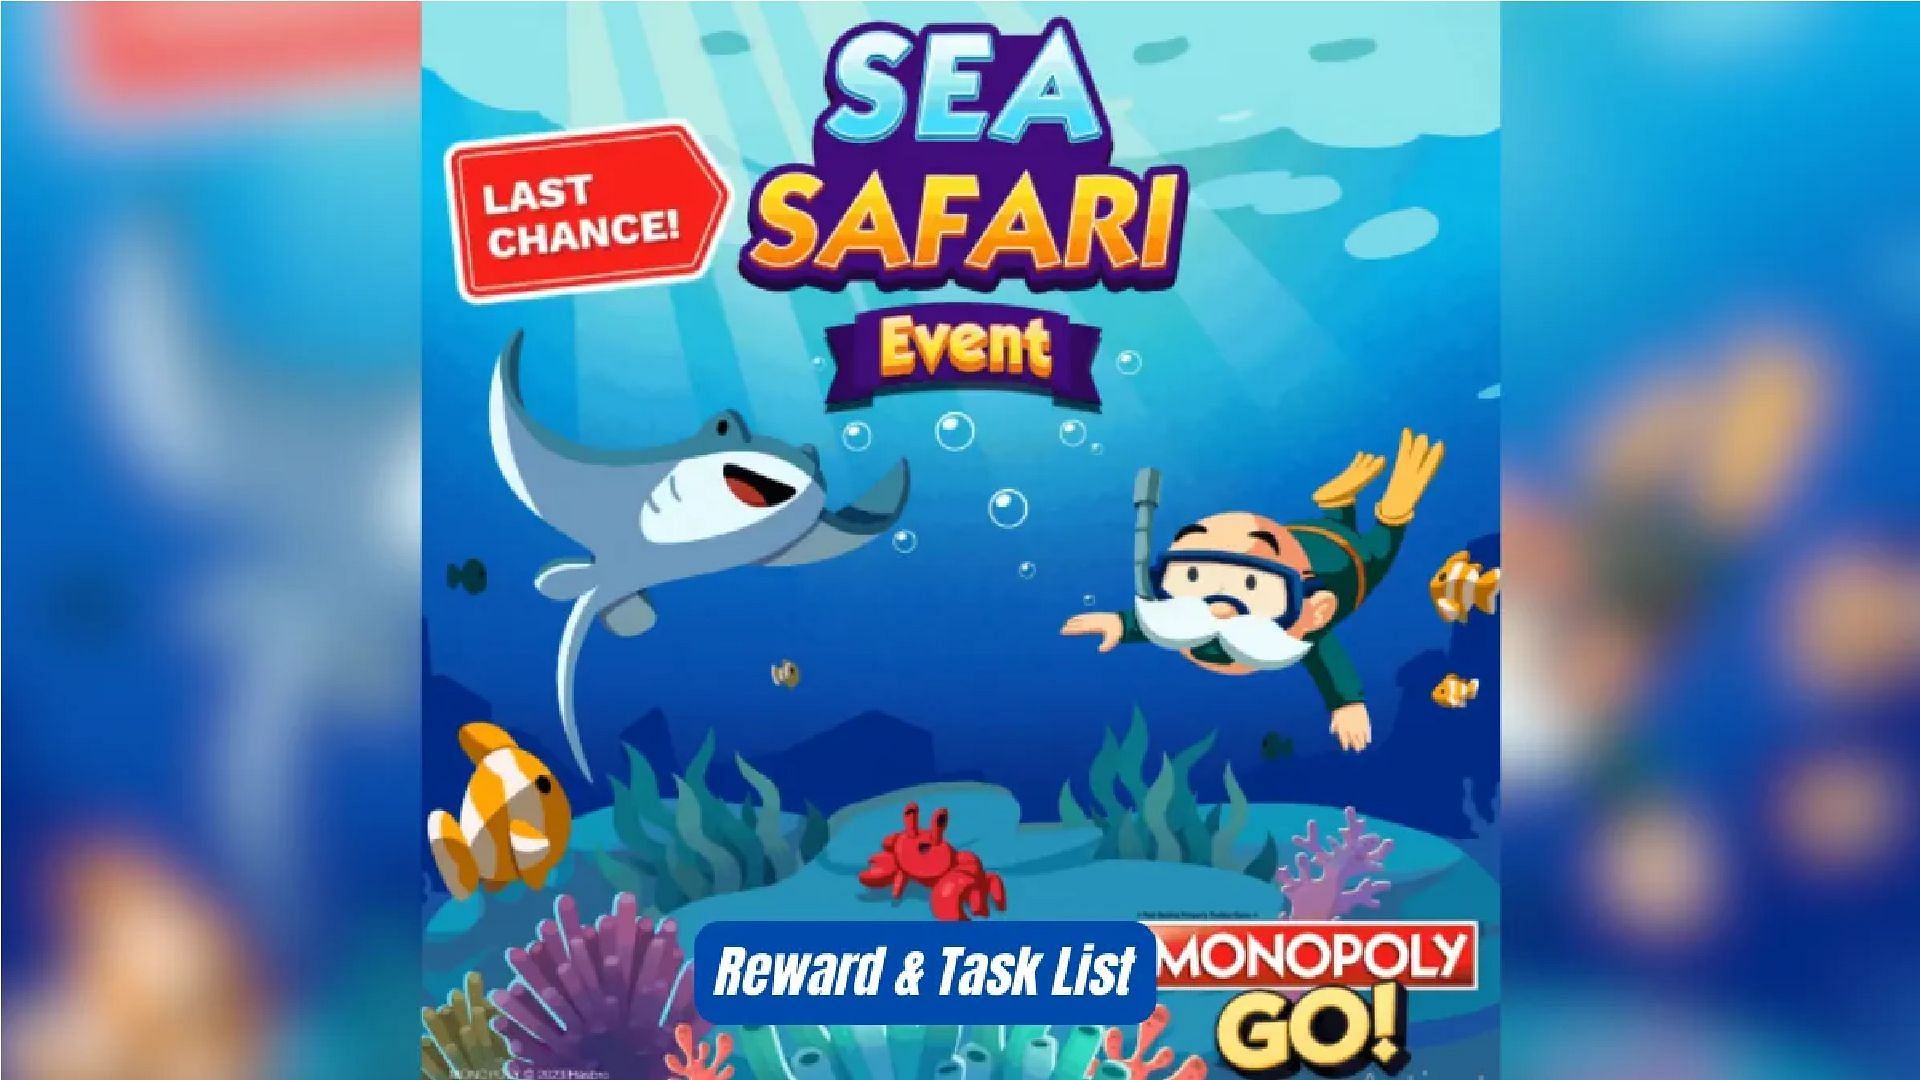 sea safari event monopoly go